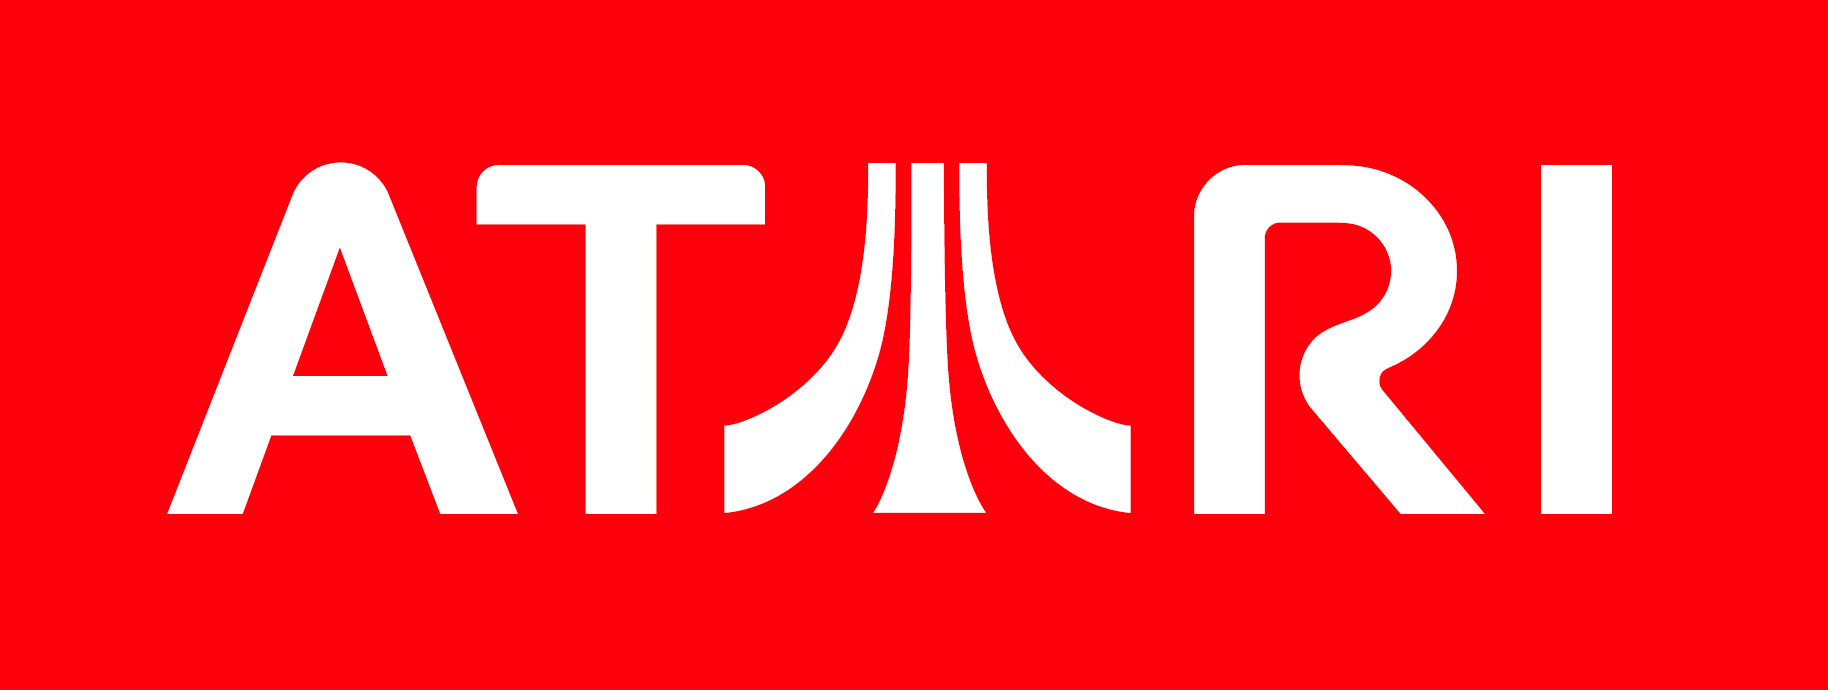 All Atari